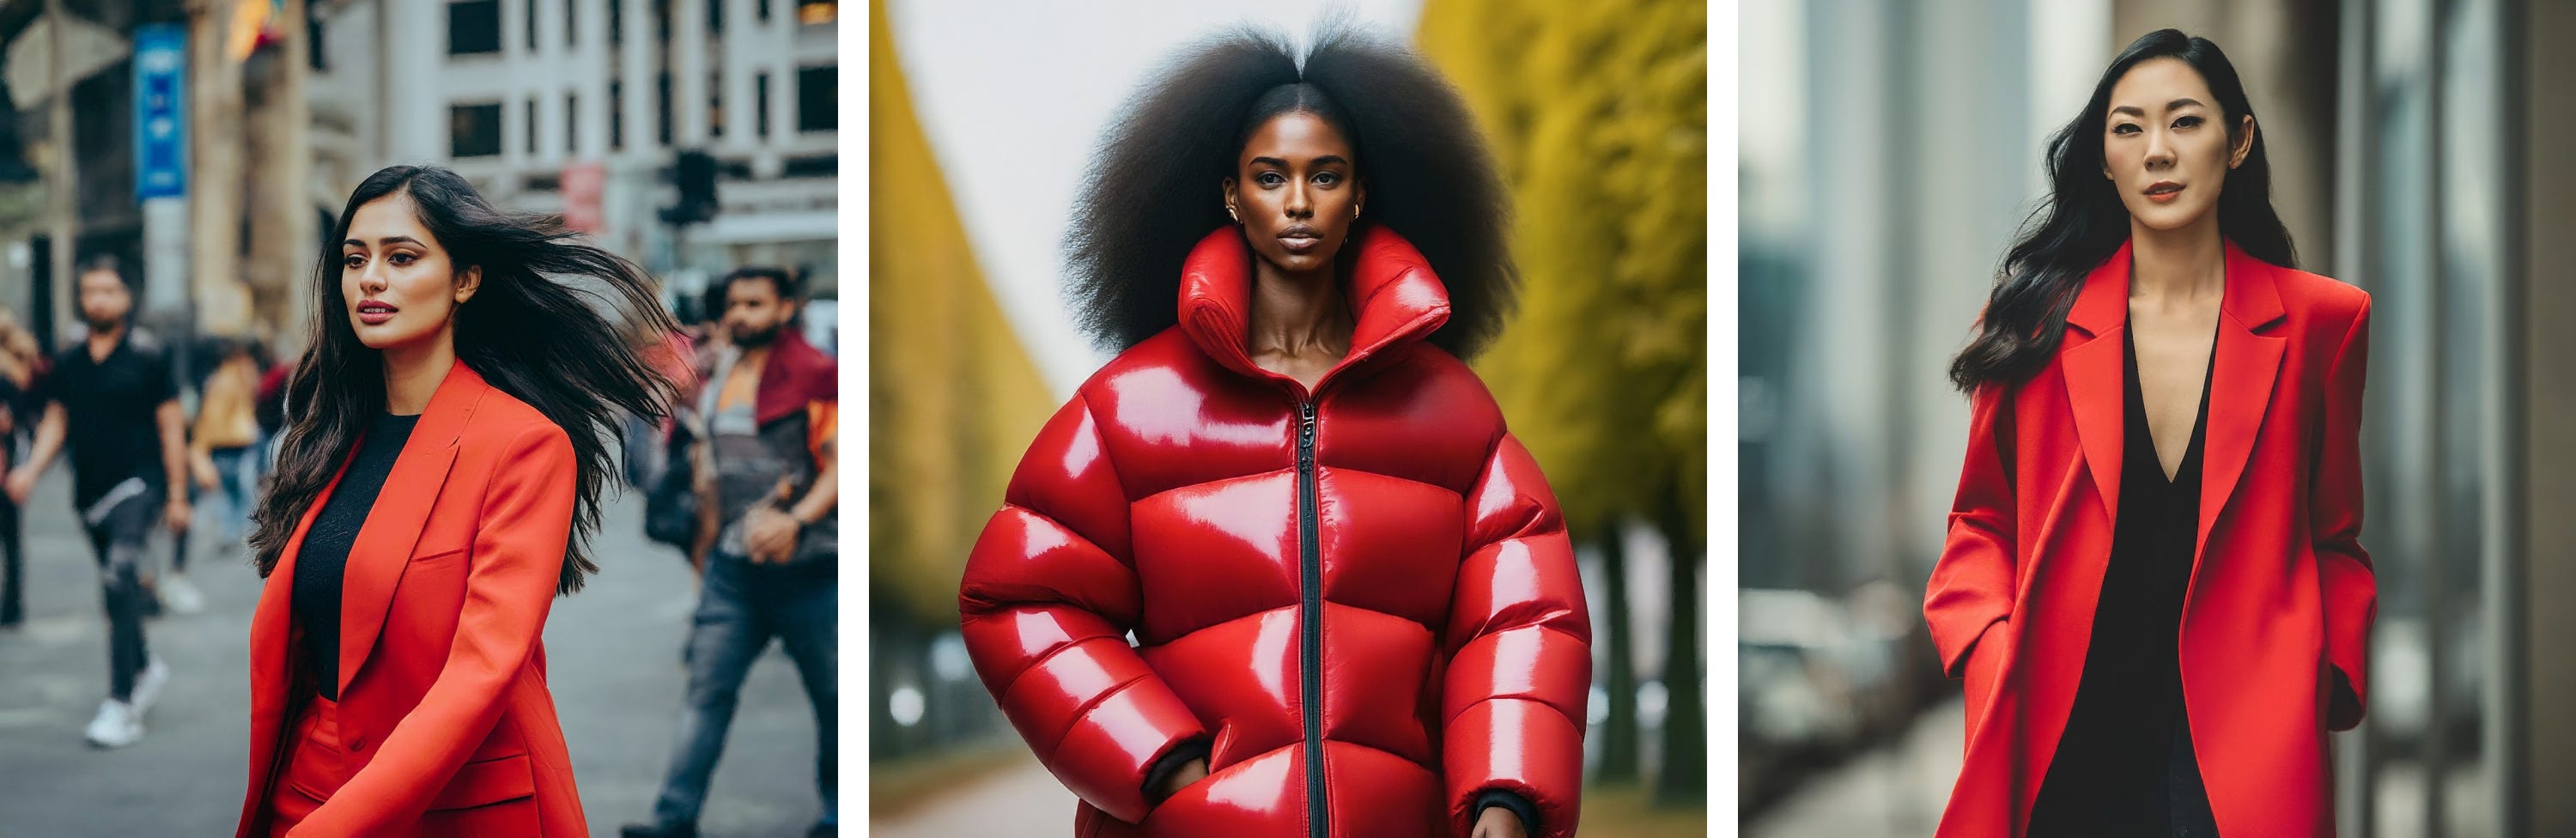 Mujer con abrigo rojo